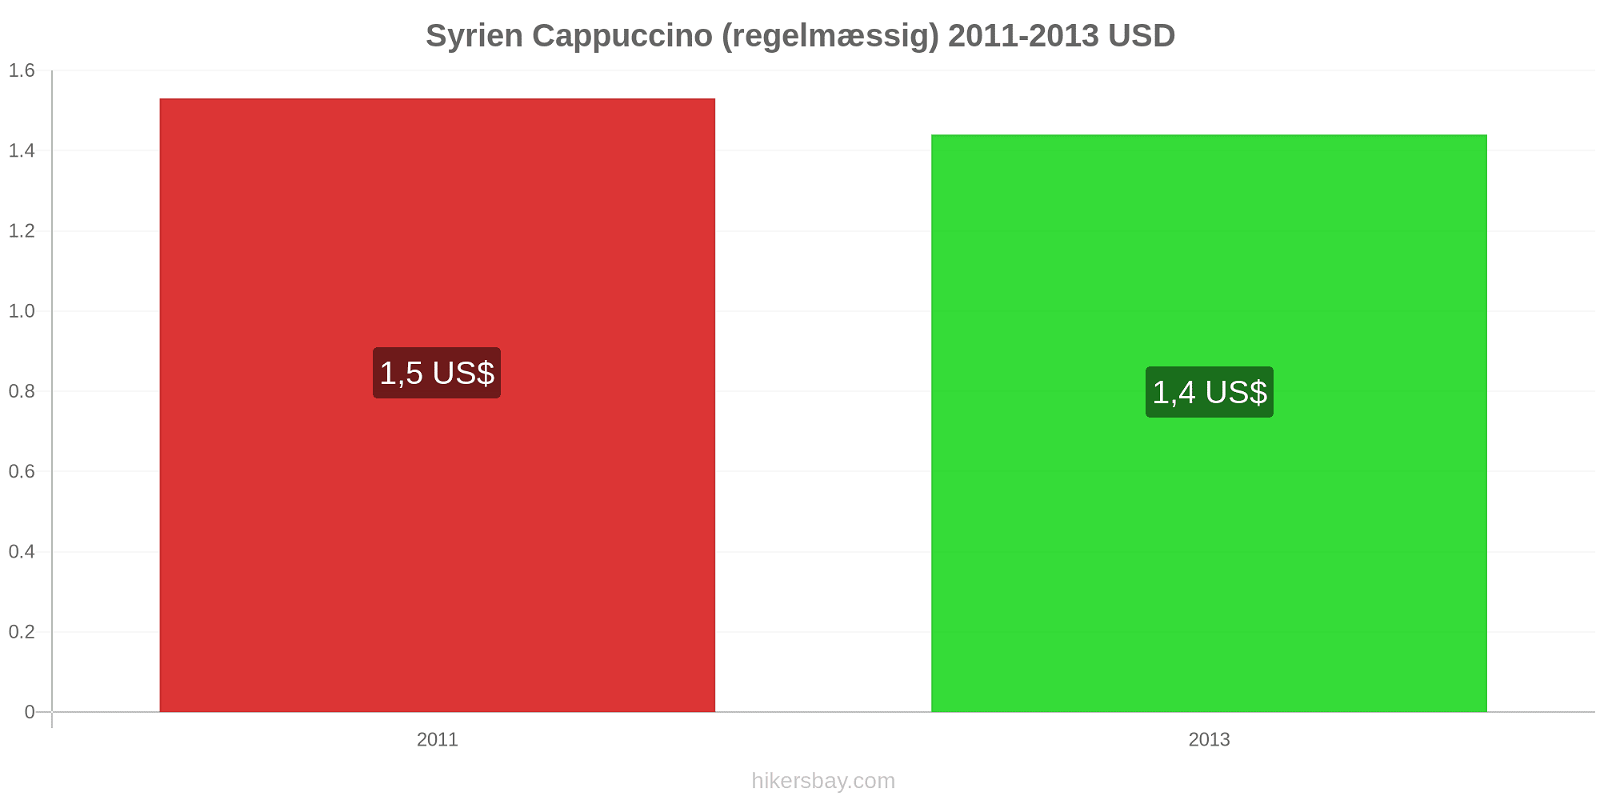 Syrien prisændringer Cappuccino hikersbay.com